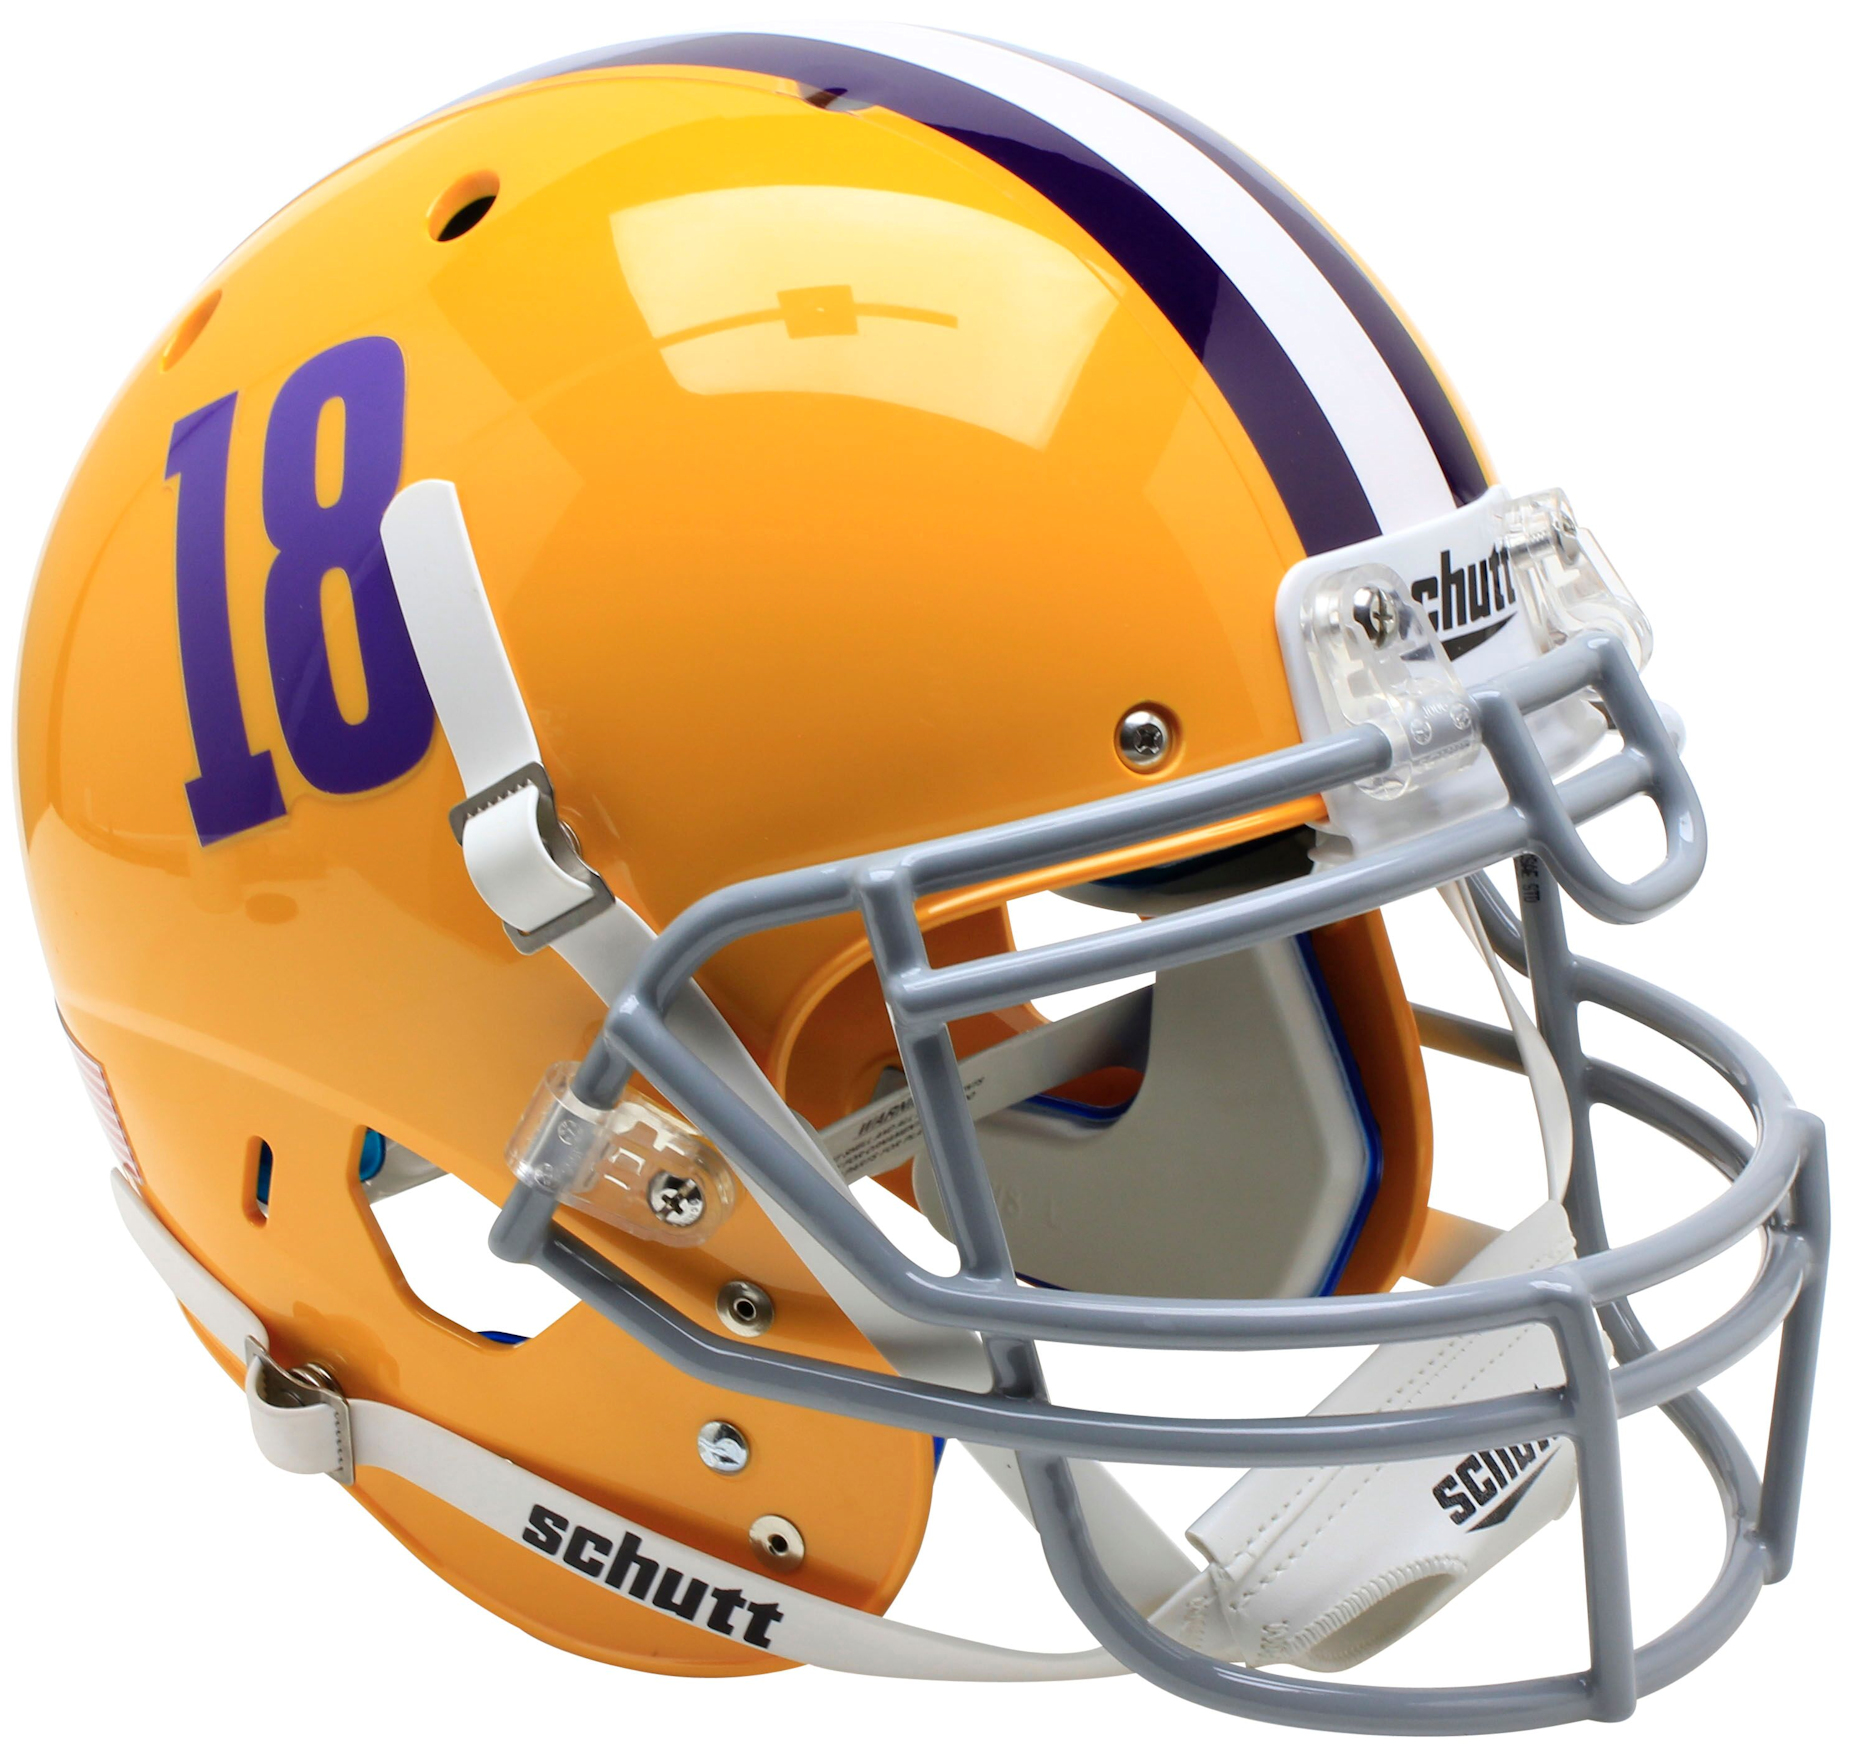 LSU Tigers Authentic College XP Football Helmet Schutt <B>18</B>